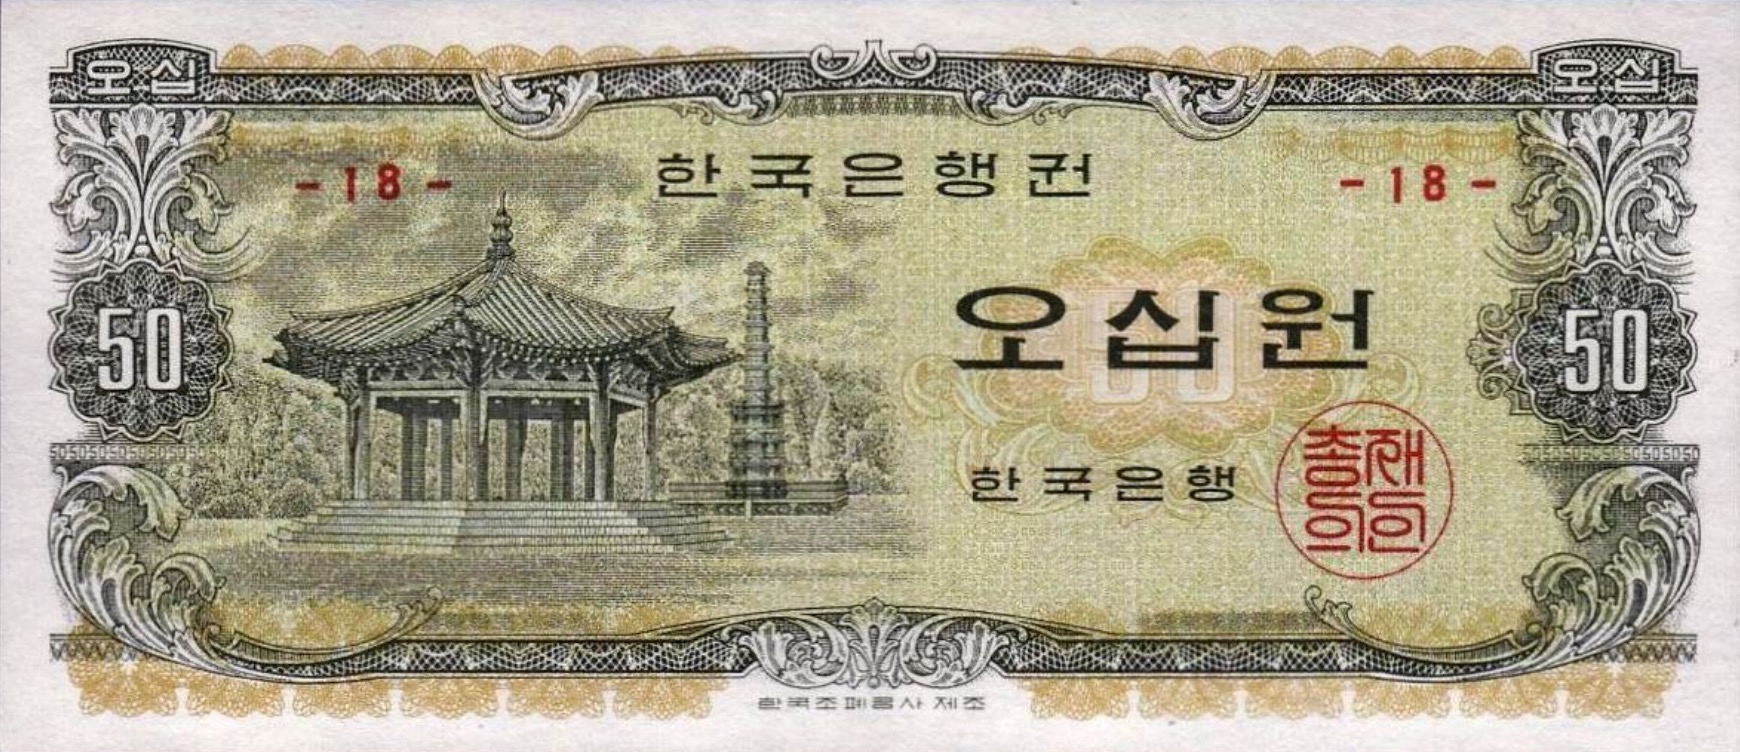 50 South Korean won banknote (Tapgol Park)